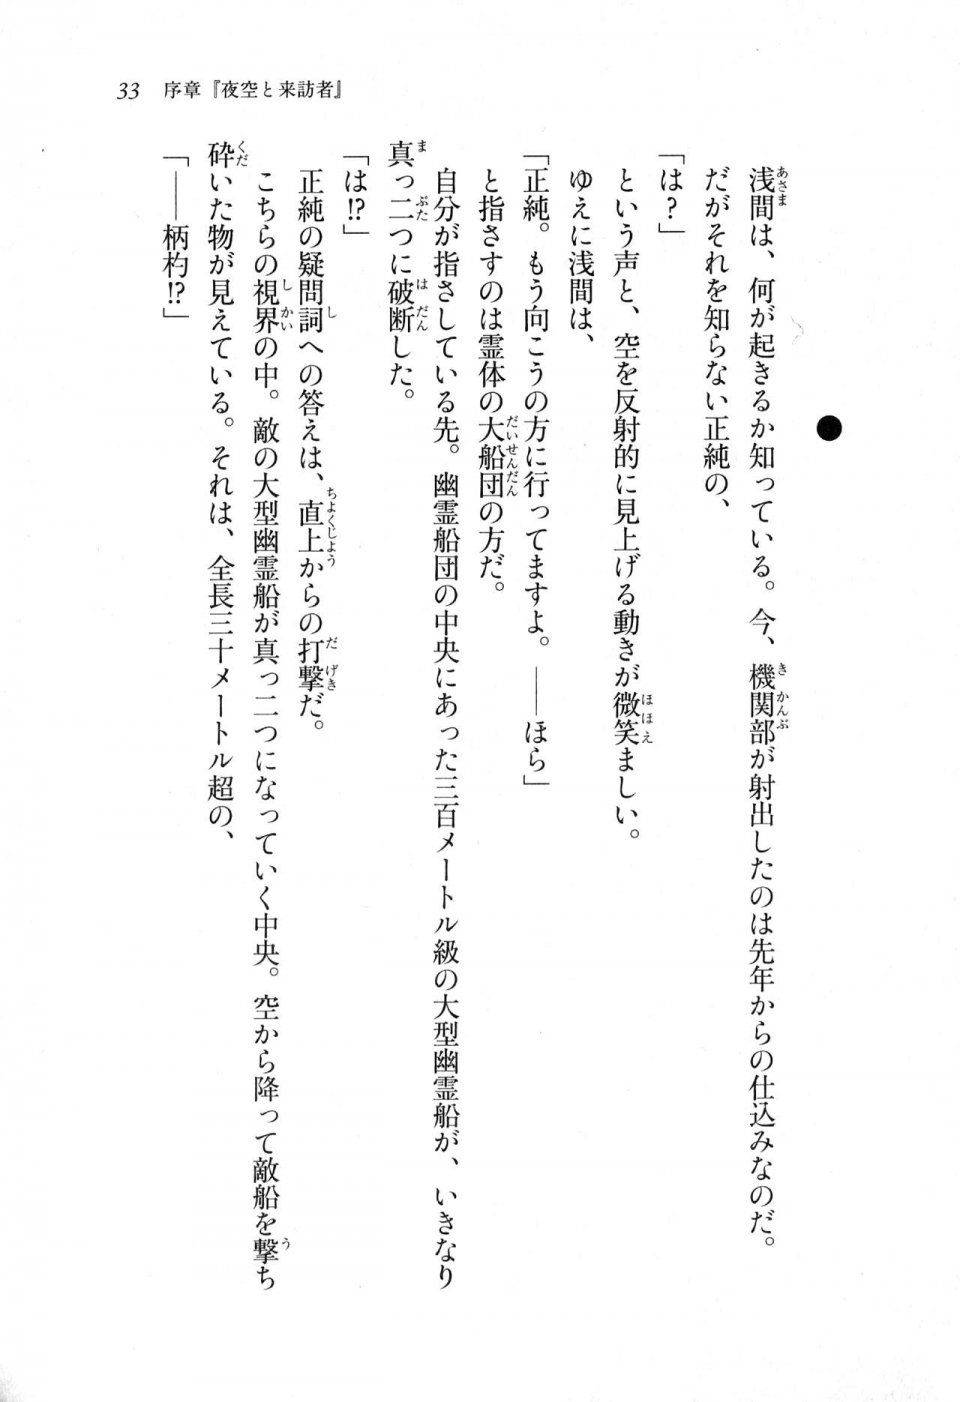 Kyoukai Senjou no Horizon LN Sidestory Vol 1 - Photo #32